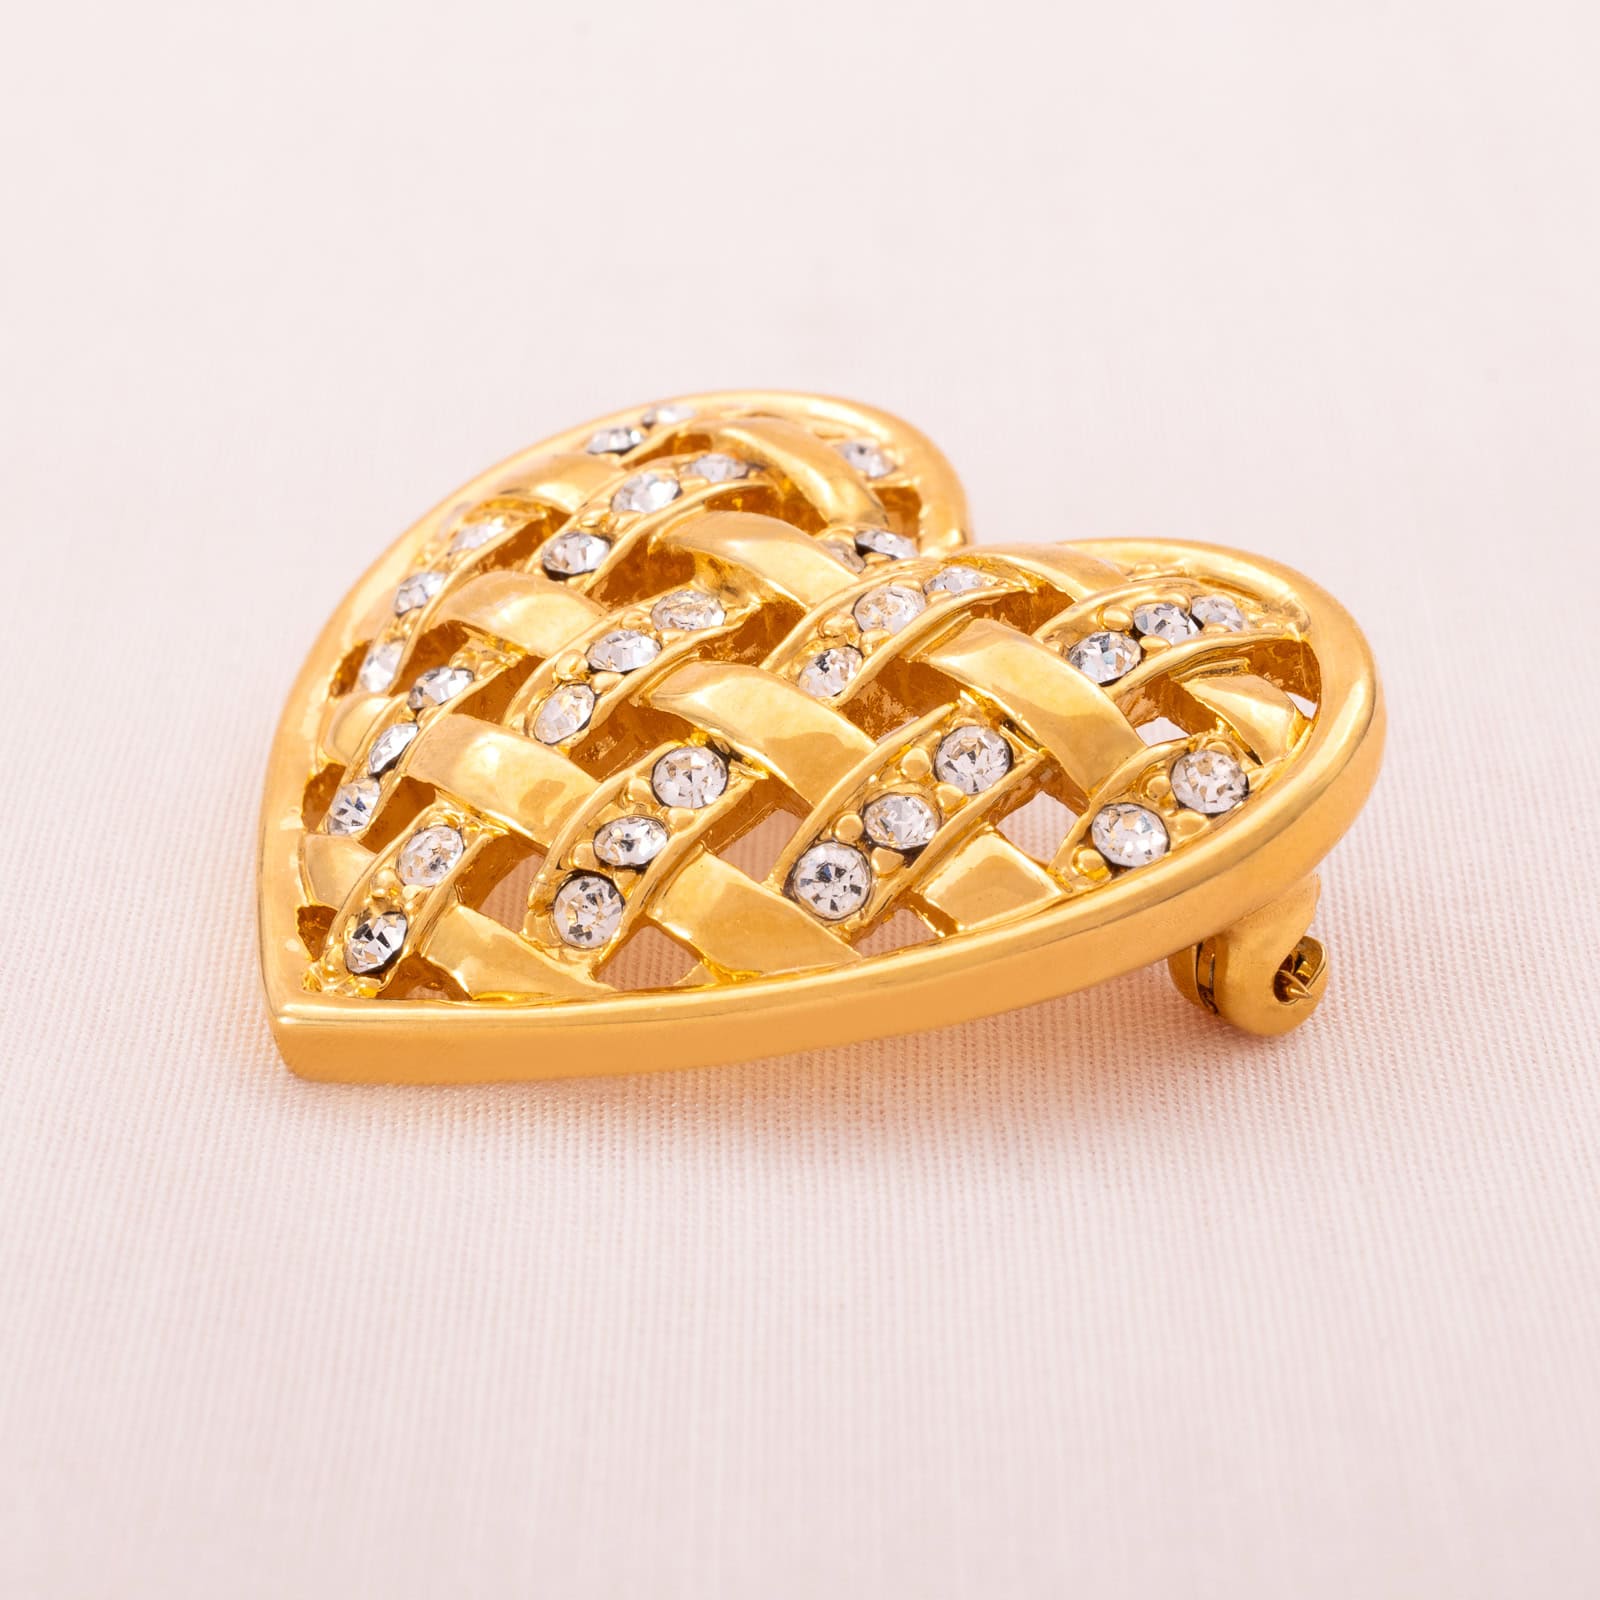 Monet-vergoldete-Herz-Brosche-mit-Kristallen-besetzt